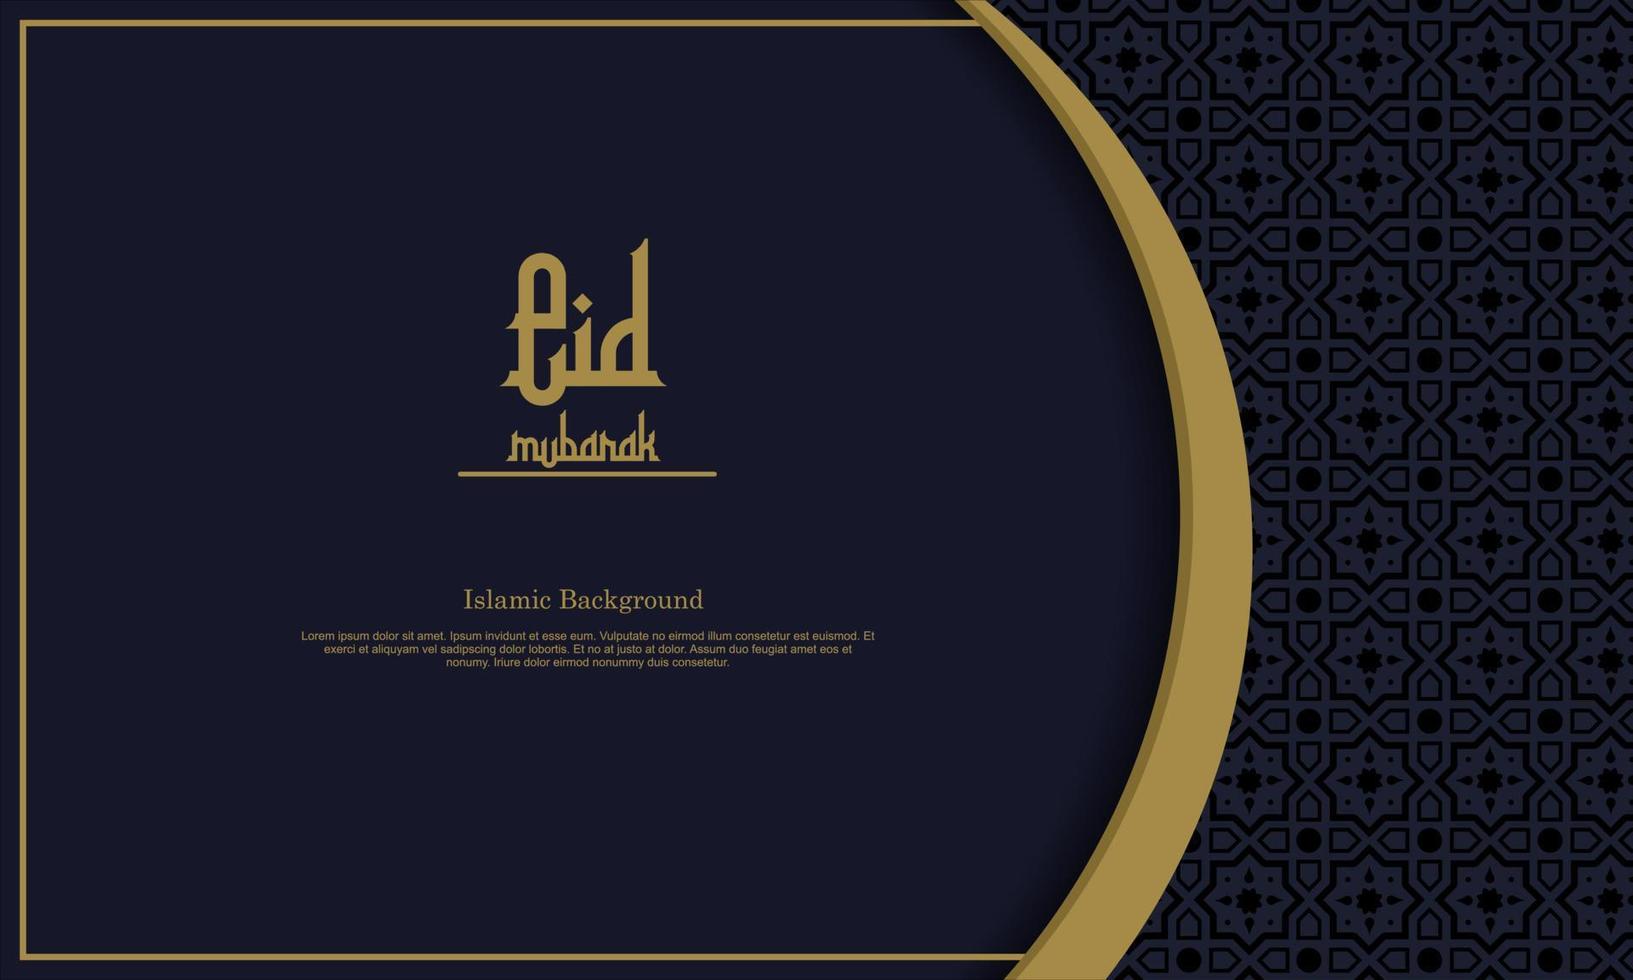 árabe elegante fondo islámico ornamental de lujo con patrón islámico ornamento decorativo premium vector